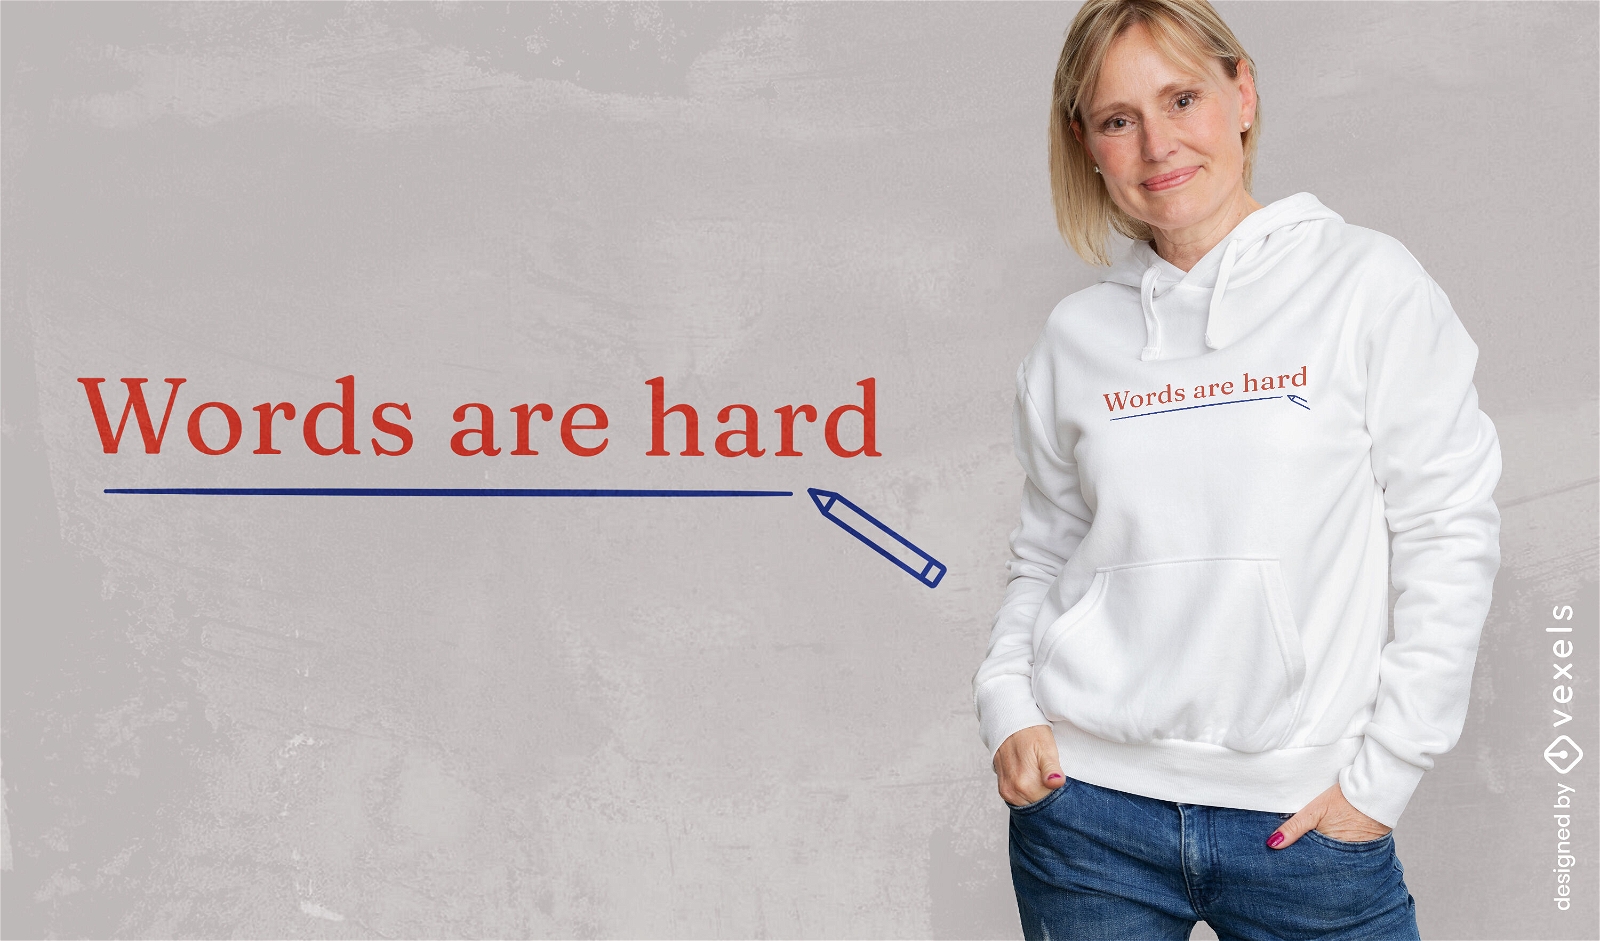 Palavras engraçadas em inglês citam design de camiseta